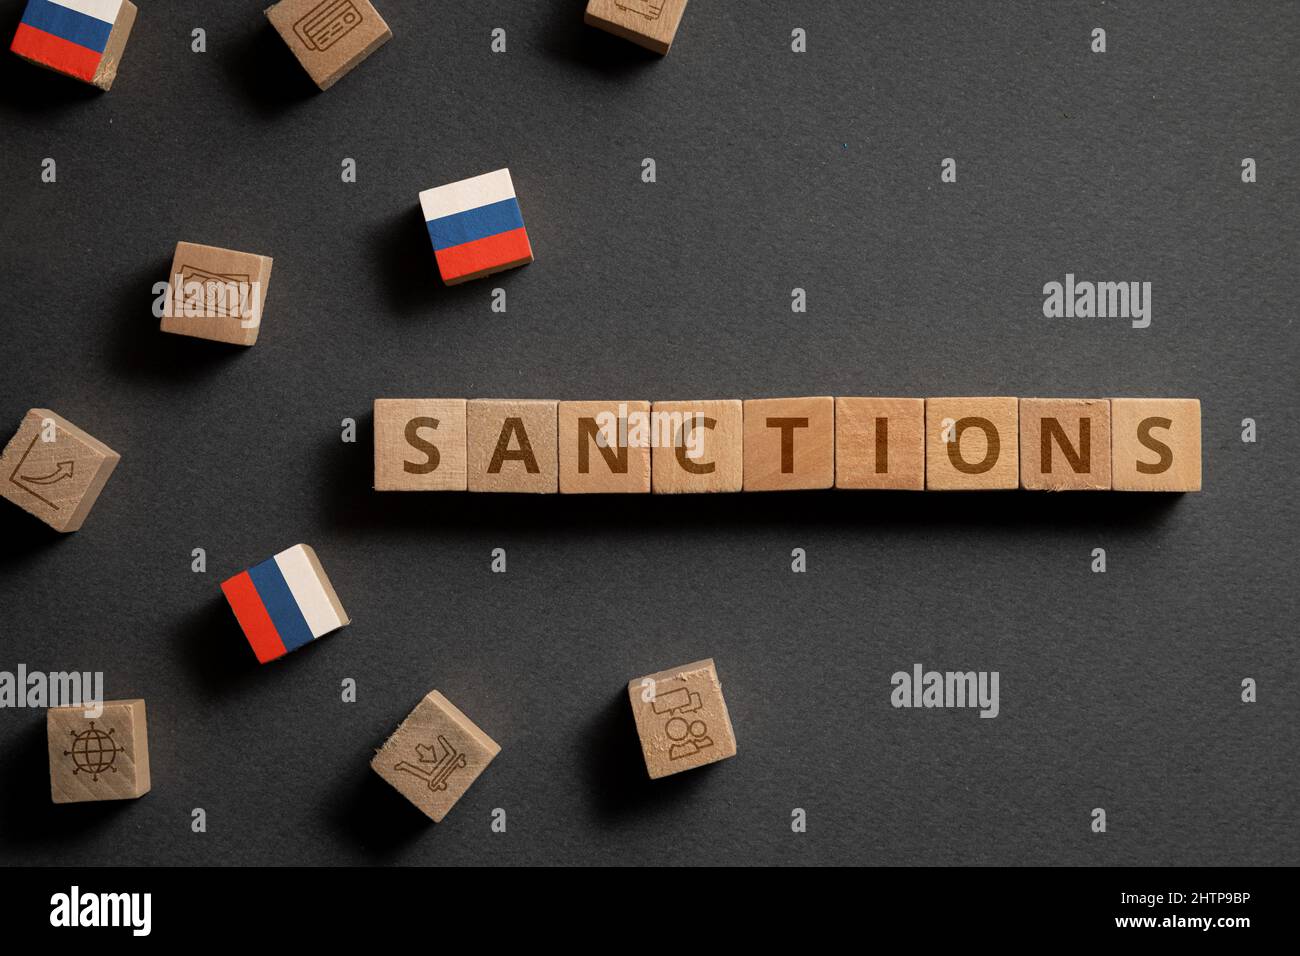 Cubi di legno con icone finanziarie, bandiera russa e sanzioni. Concetto di sanzioni in Russia Foto Stock